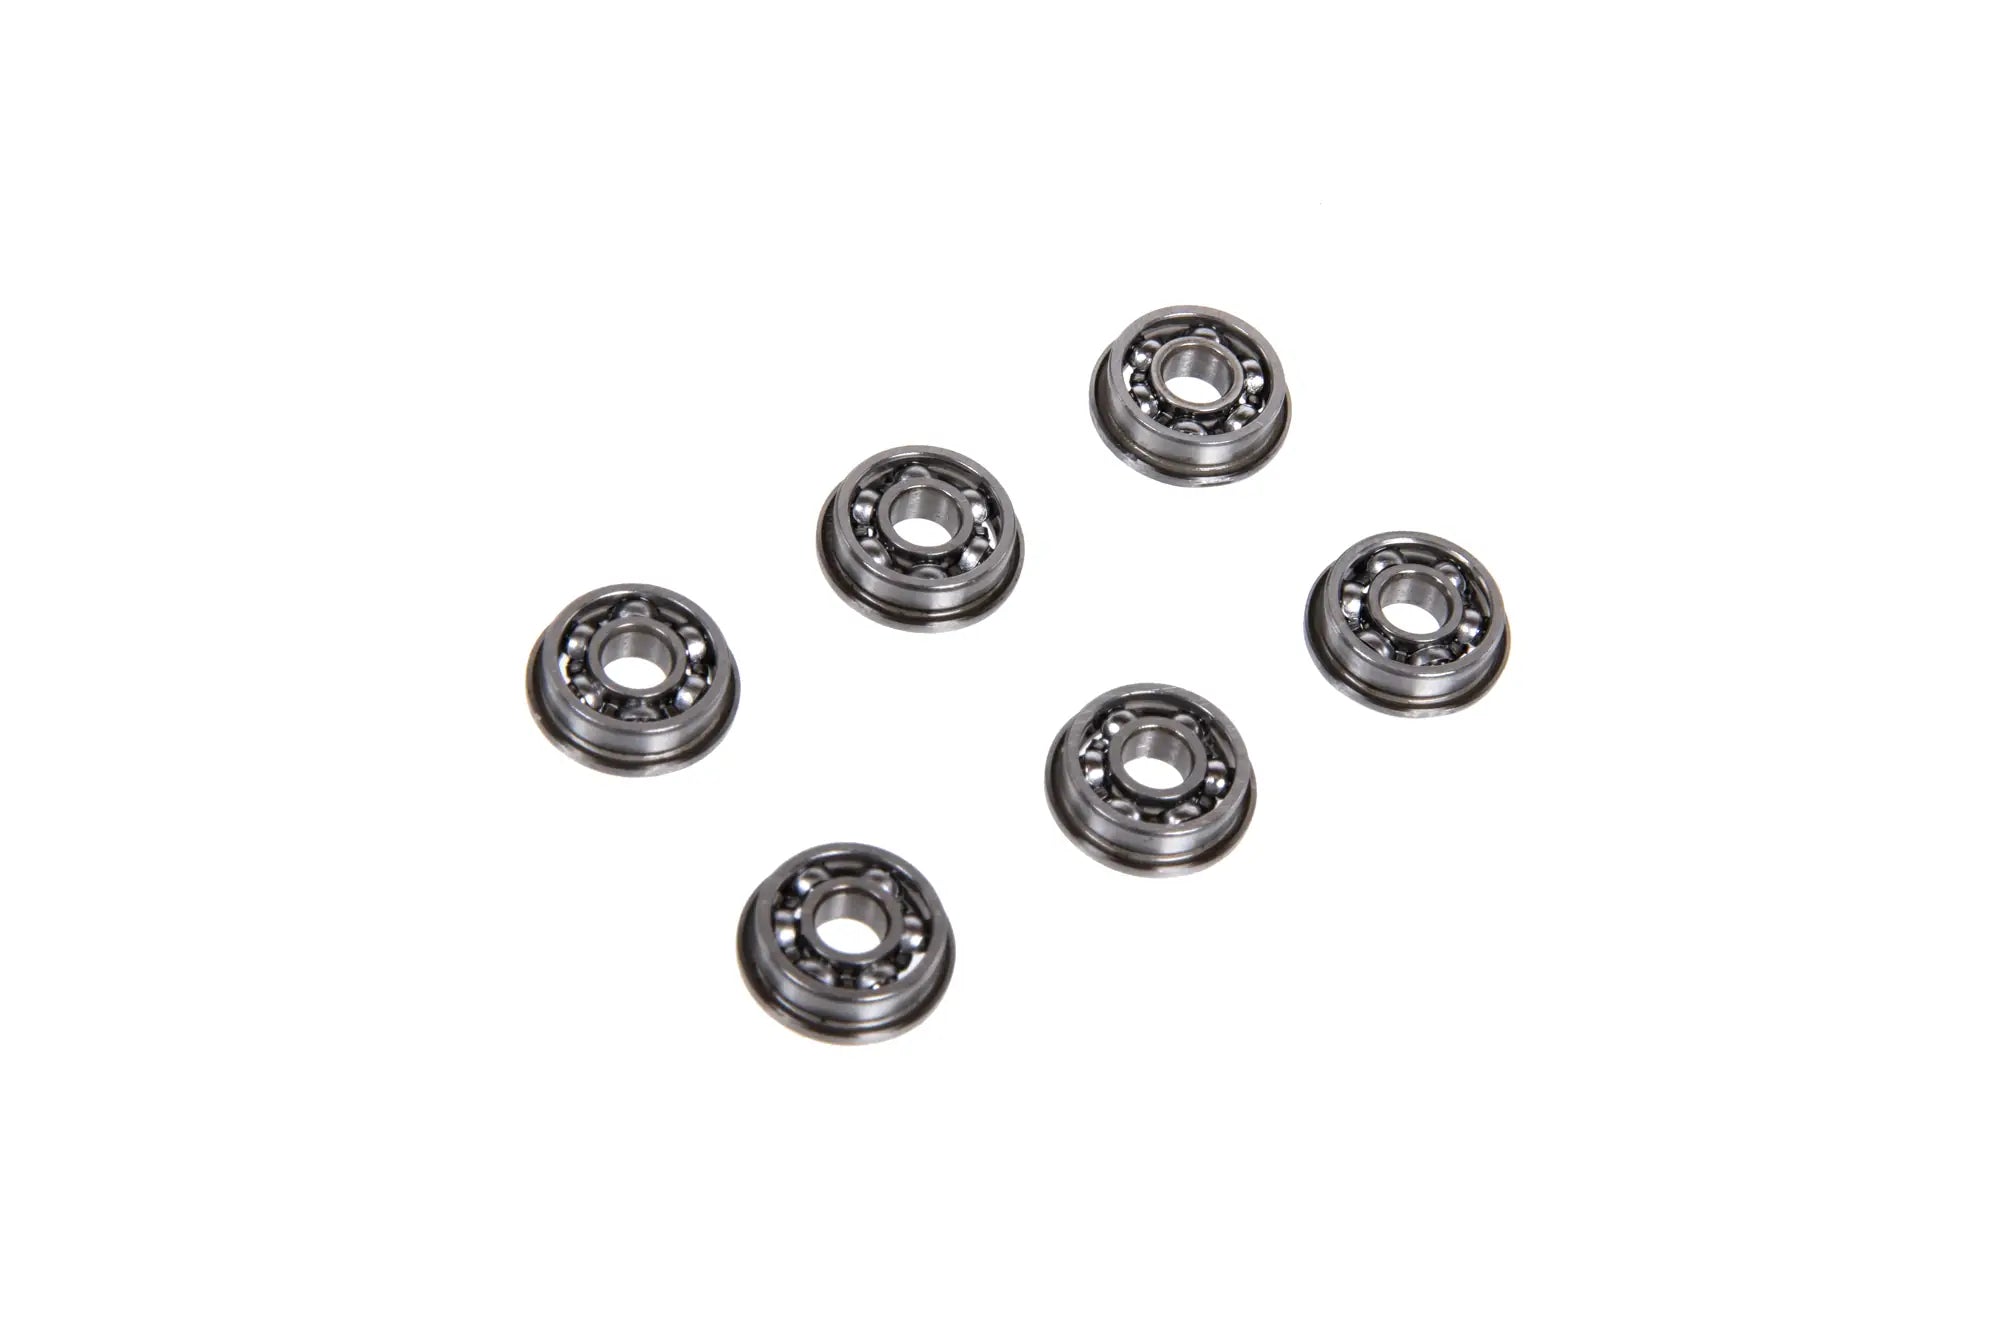 8mm FPS Softair steel ball bearings (B8CA+)